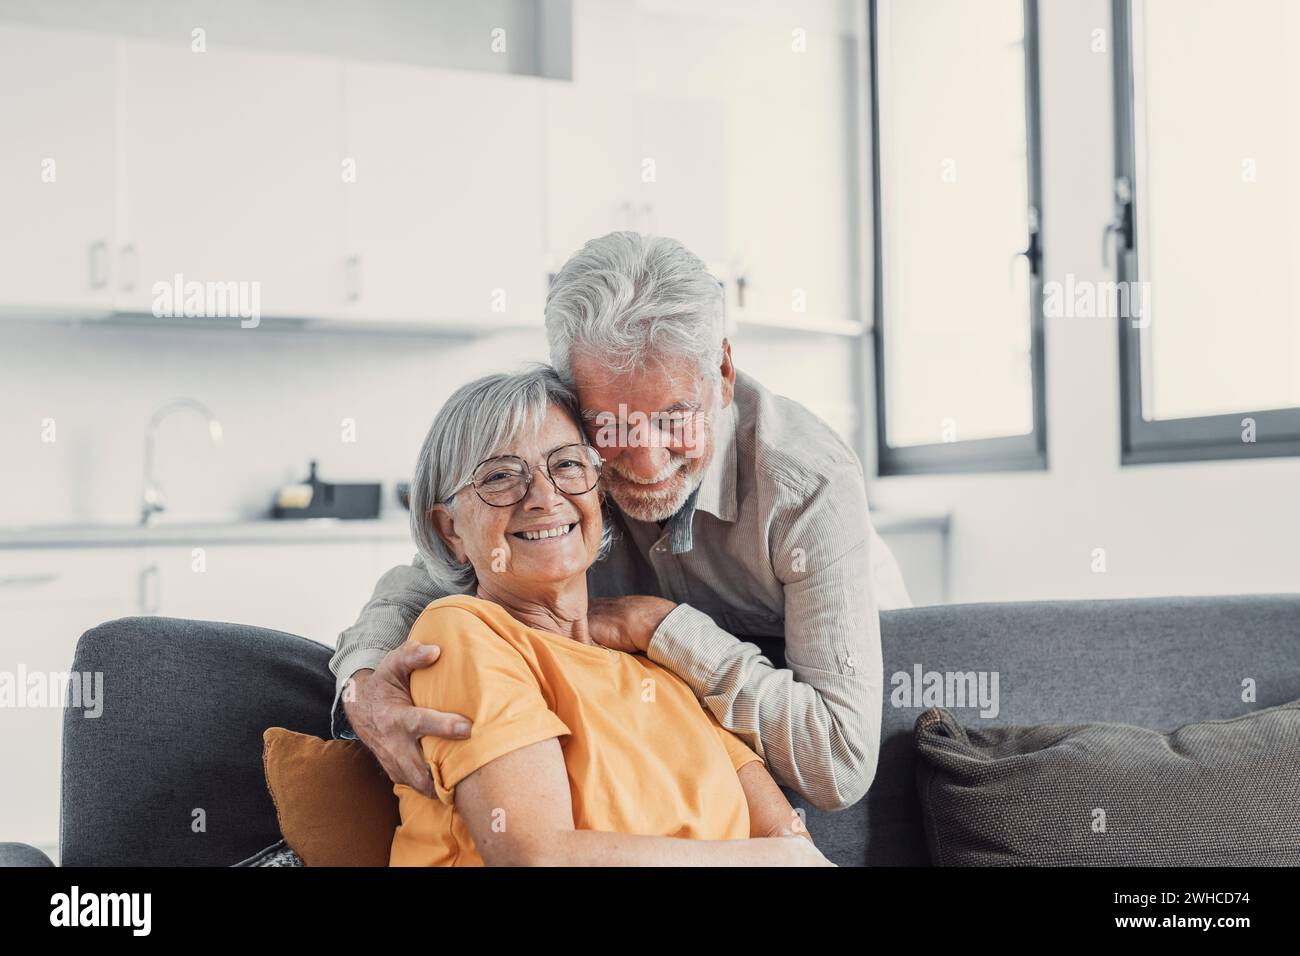 Ritratto alla testa del marito e della moglie degli anni '60 che sorridono si siedono rilassati sul divano abbracciando coccole, la coppia matura e felice riposa sul divano del soggiorno Foto Stock